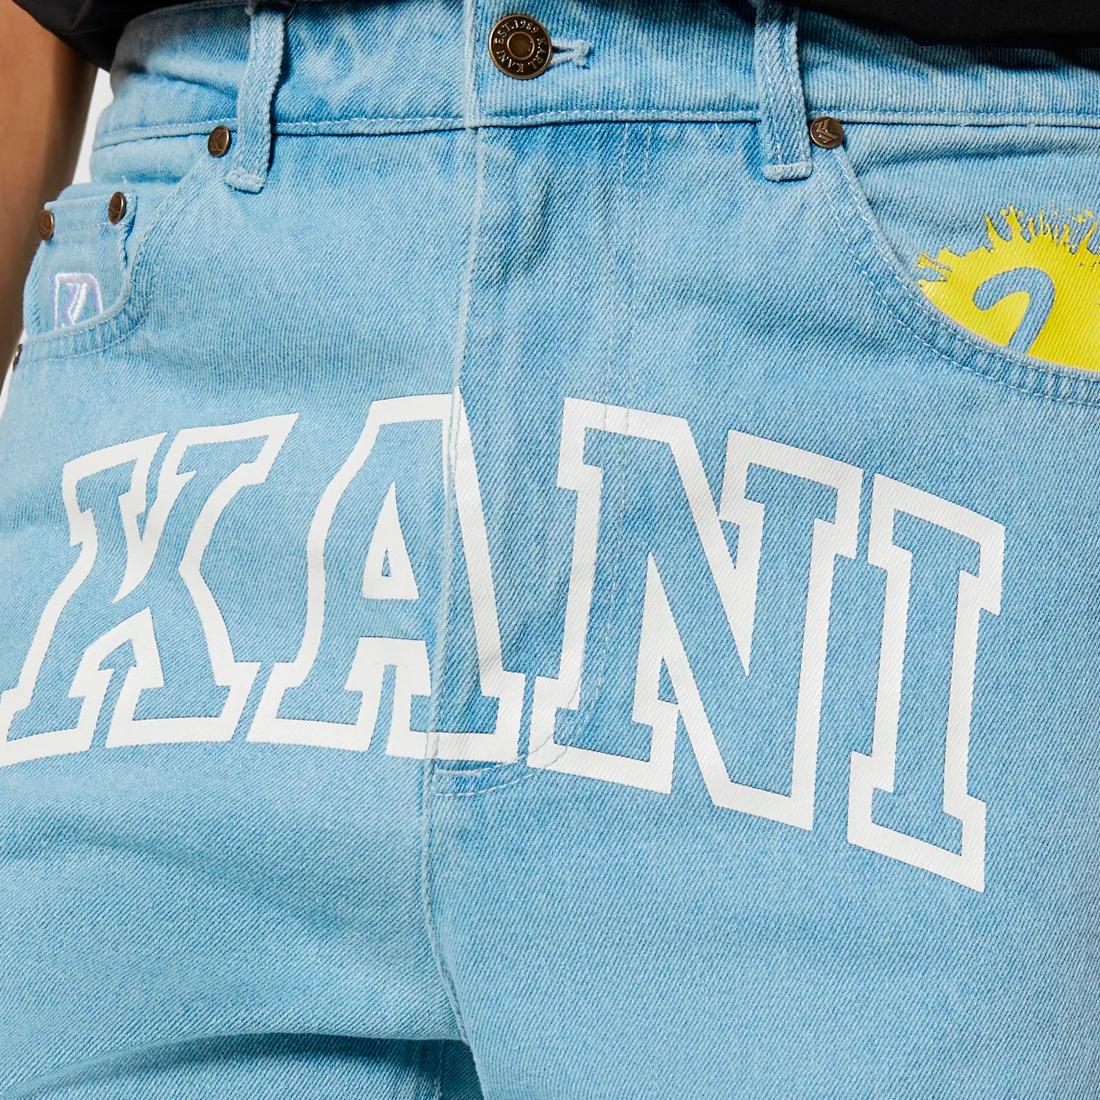 Karl Kani Serif Denim Shorts bleached blue - Shop-Tetuan